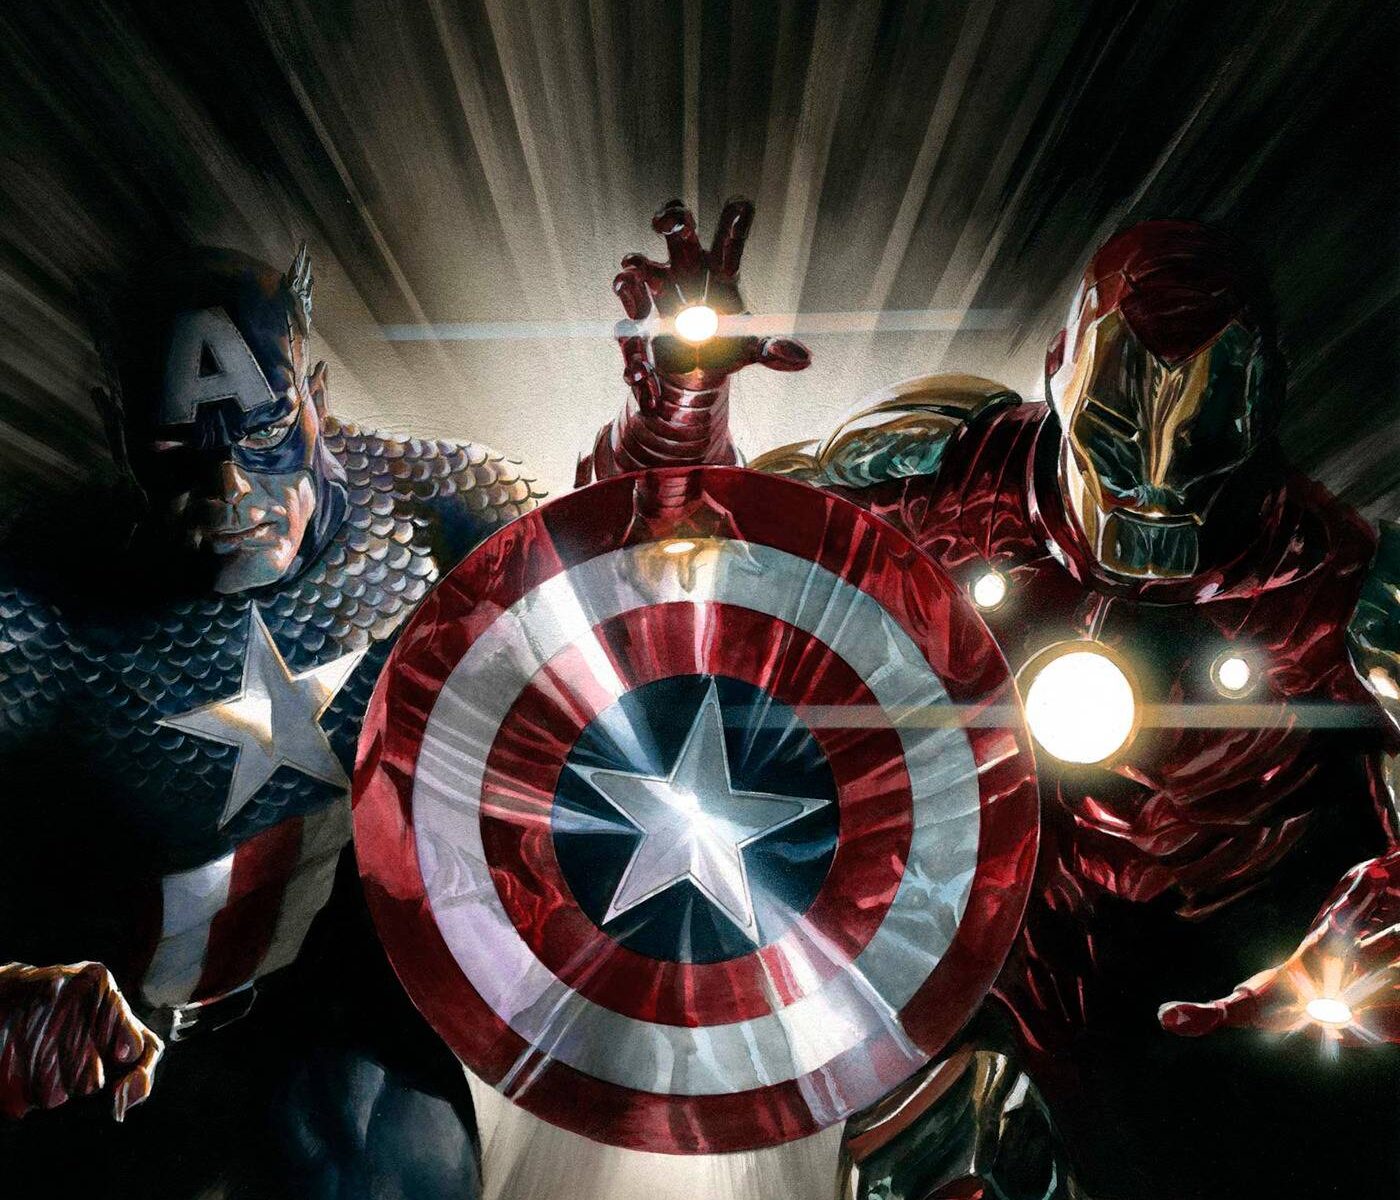 Funko Pop! Captain America: Civil War - Captain America with Shield #1